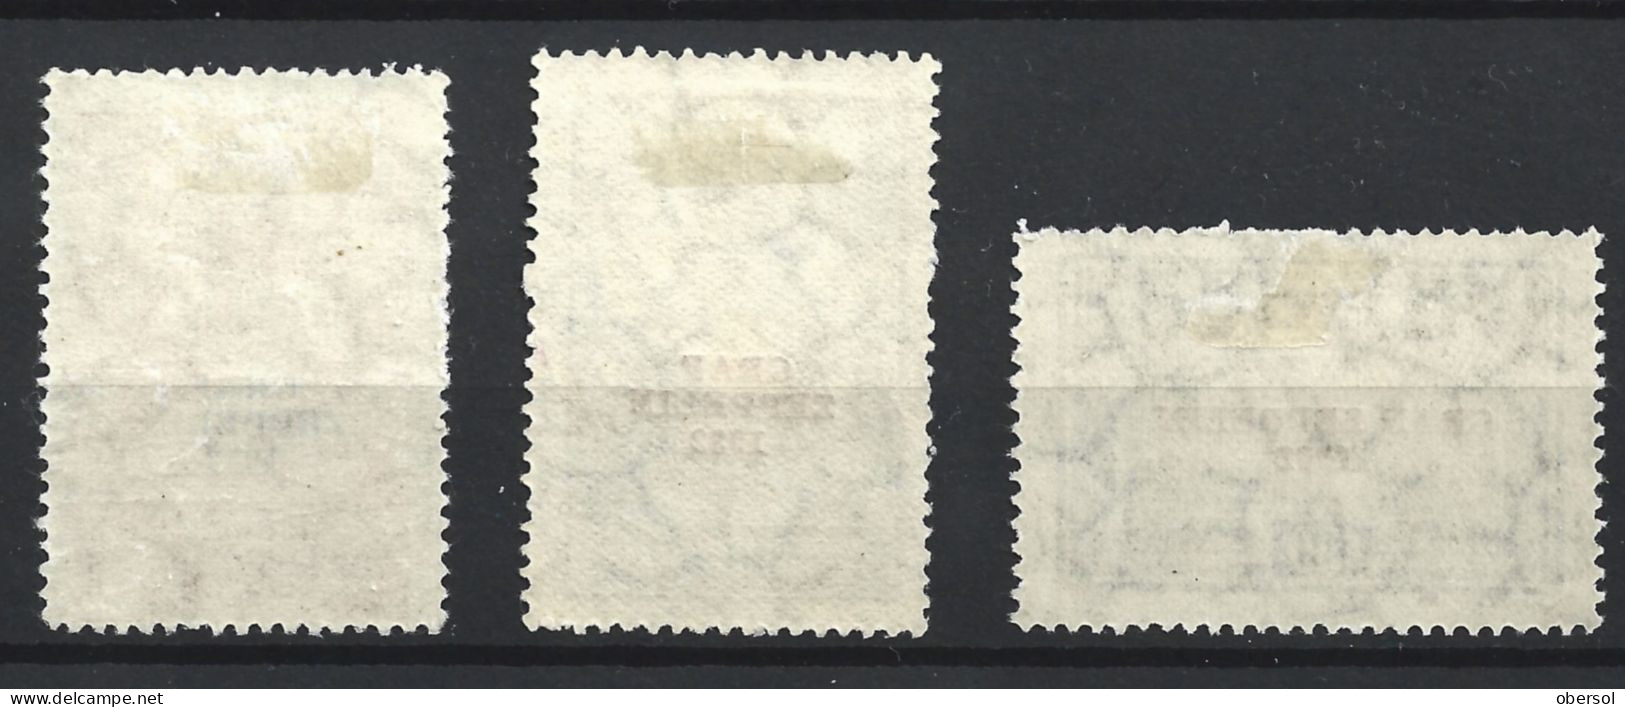 Argentina 1932 Graf Zeppelin Overprint Complete Set MH Stamps ** HCV ** - Nuovi